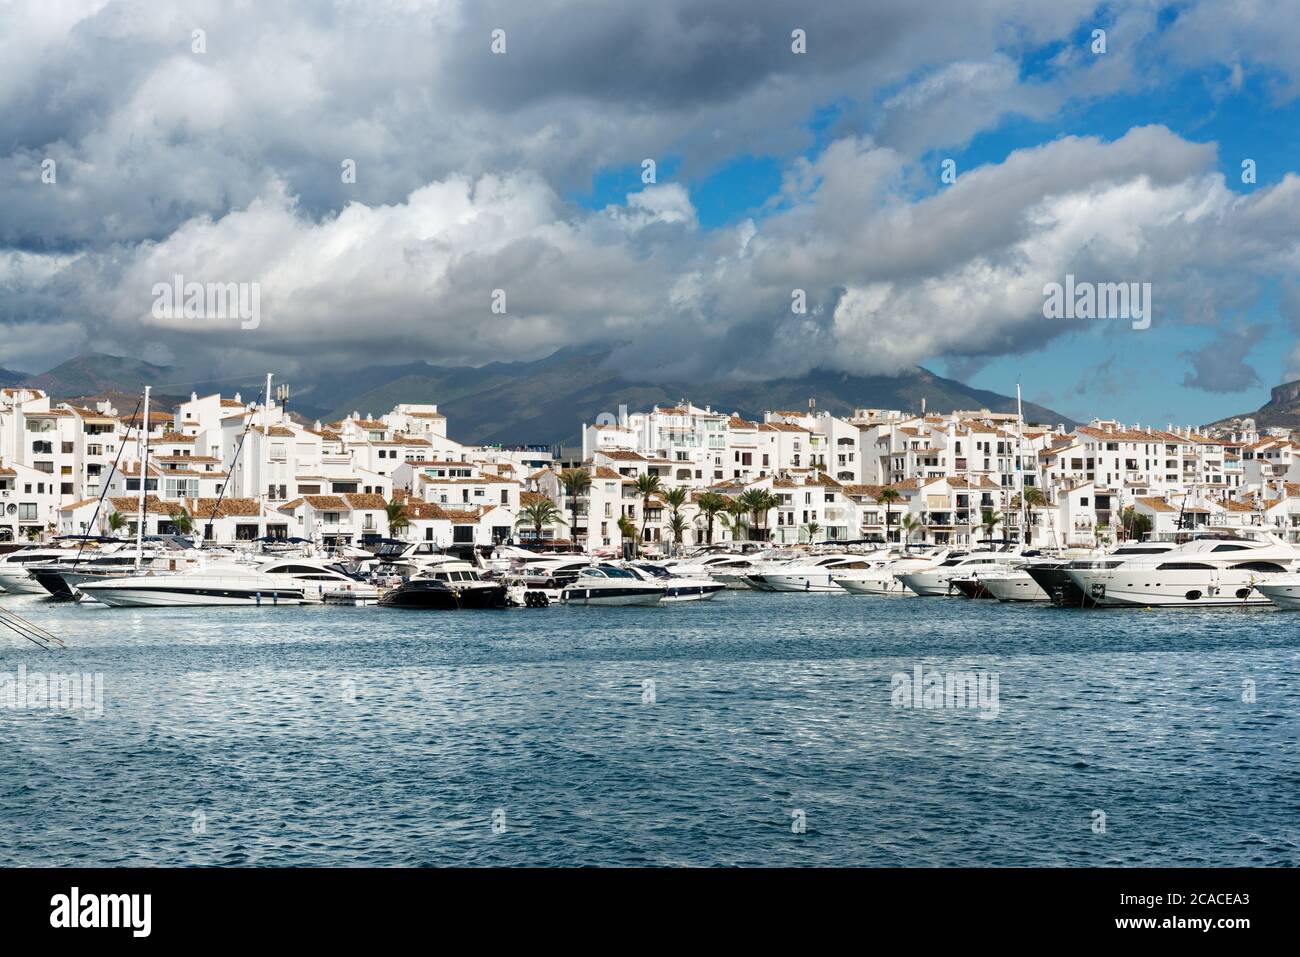 Marbella, España - 13 de octubre de 2016: Blanco yates de lujo caros  amarrados en el puerto deportivo de Puerto José Banús en la Costa del Sol  en una mañana nublada Fotografía